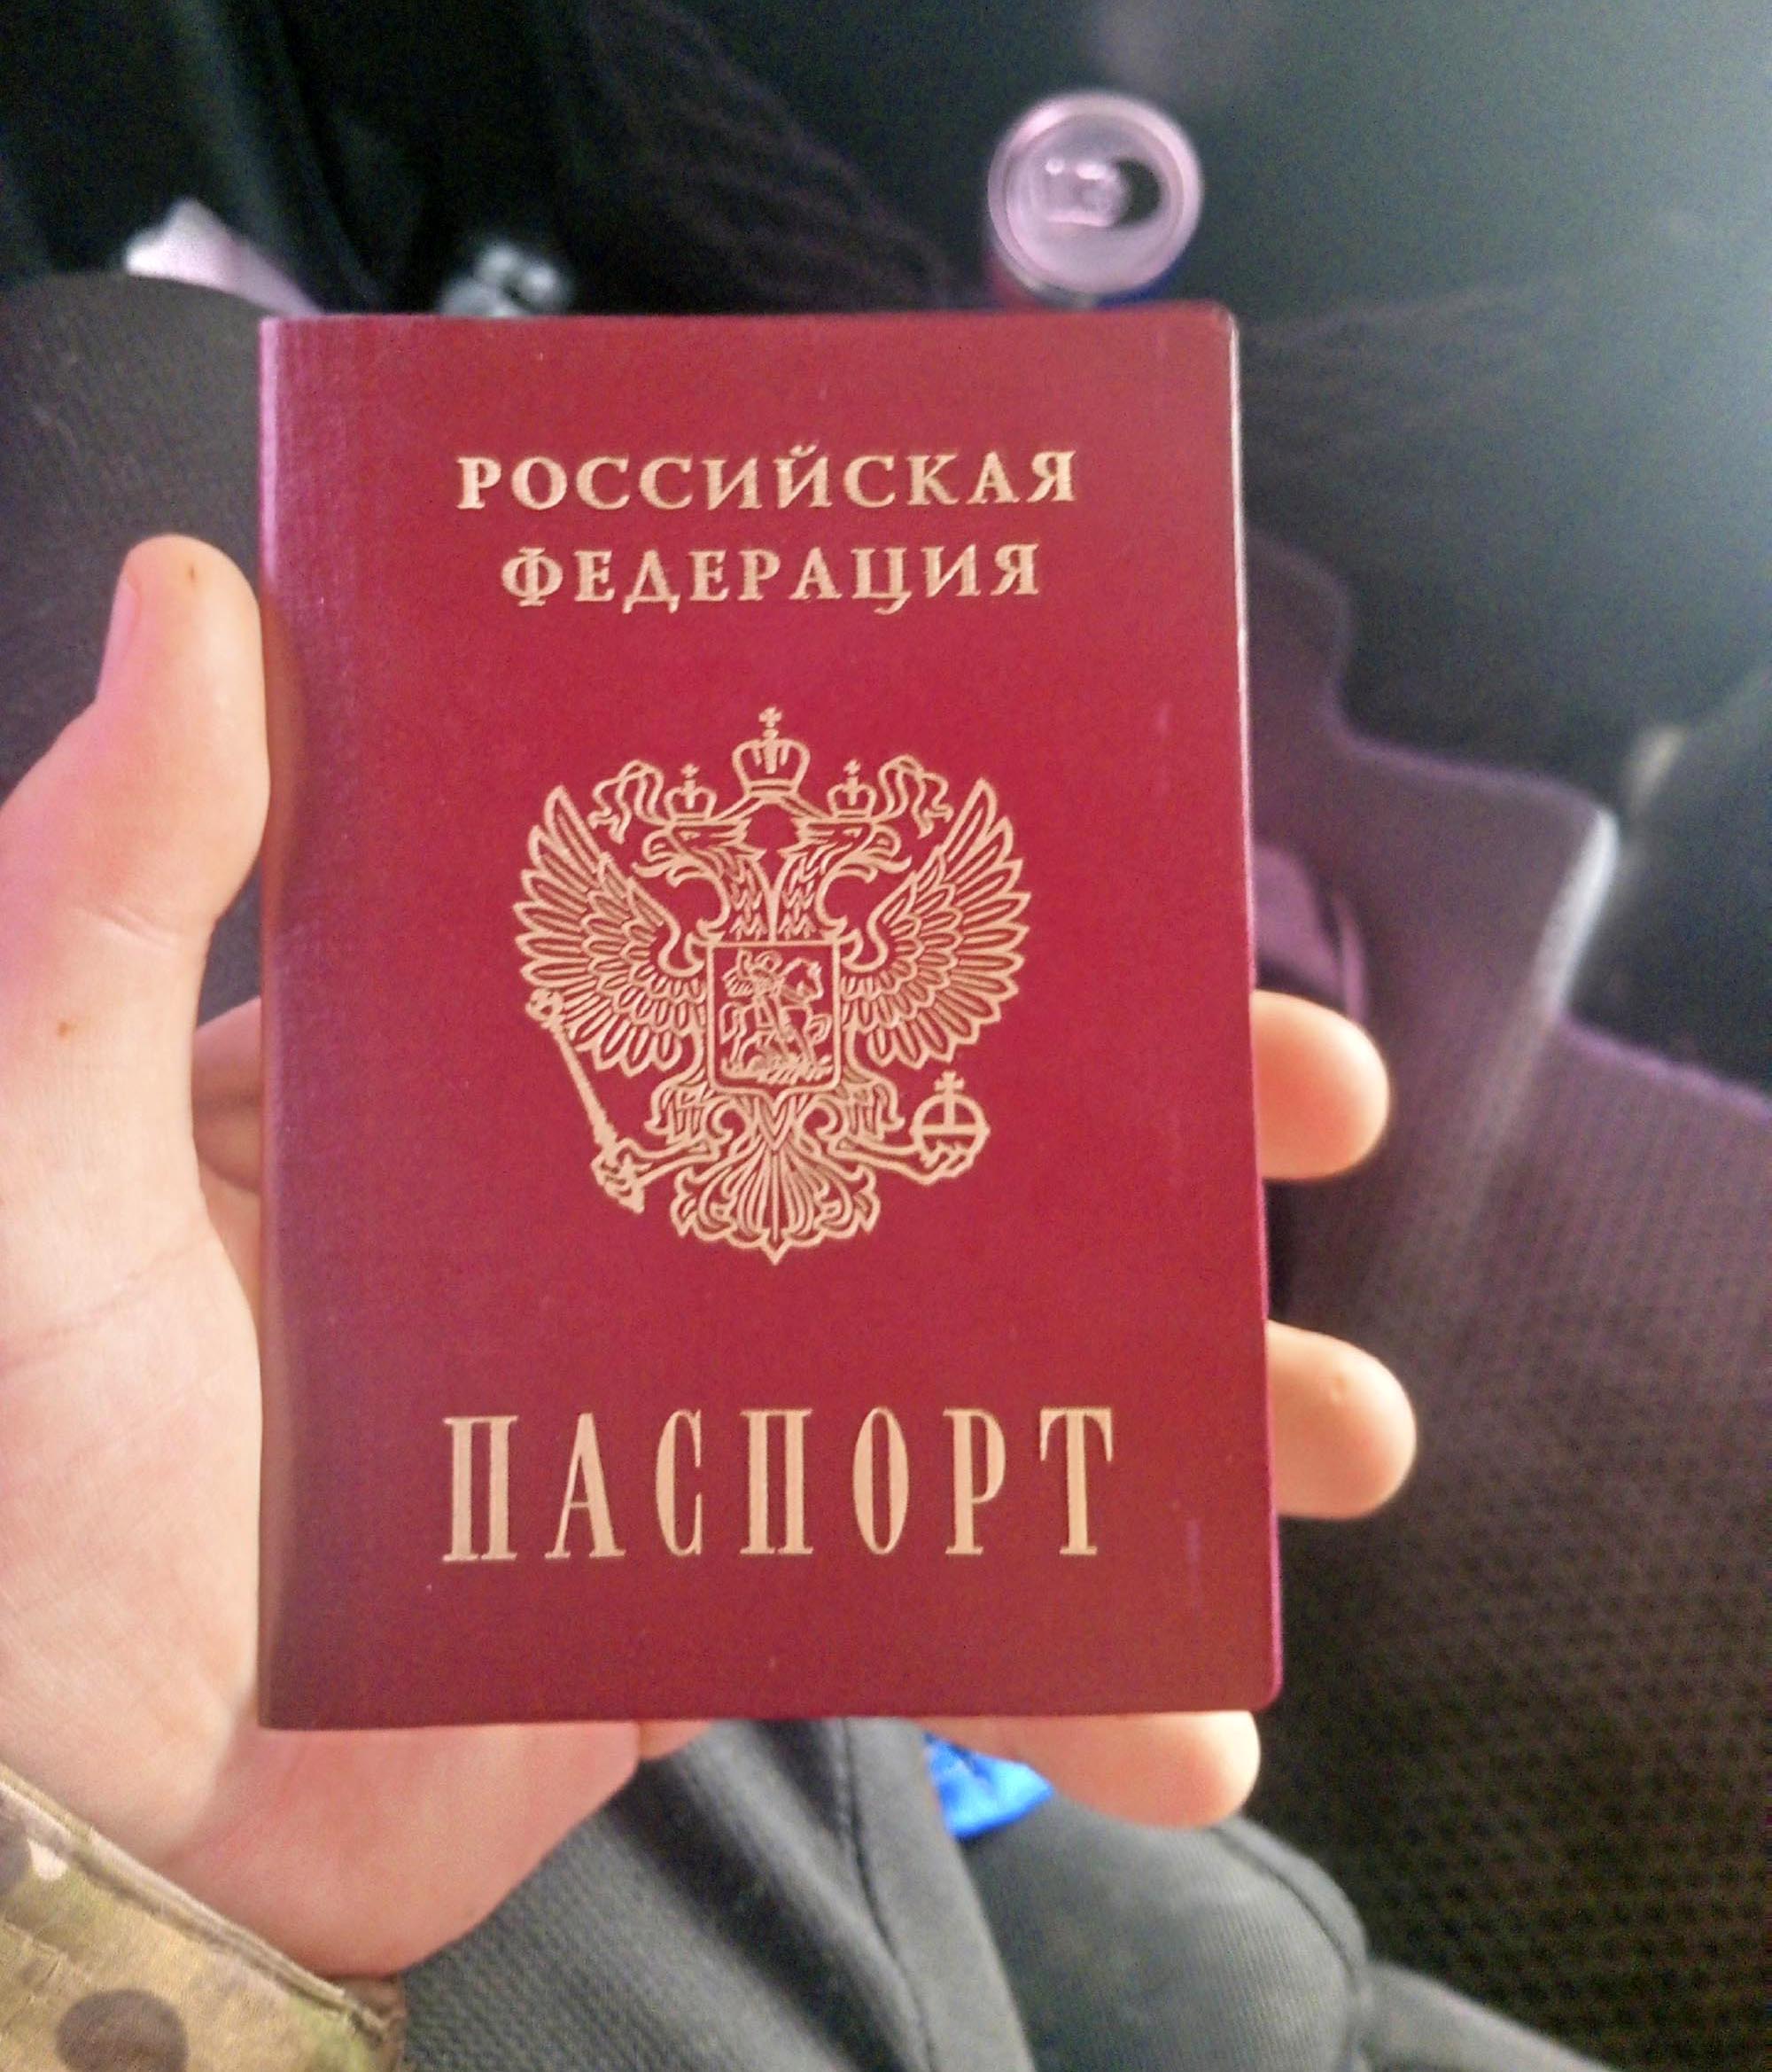 In dem üblen Propagandavideo war zu sehen, wie er mit seinem russischen Ausweis prahlte